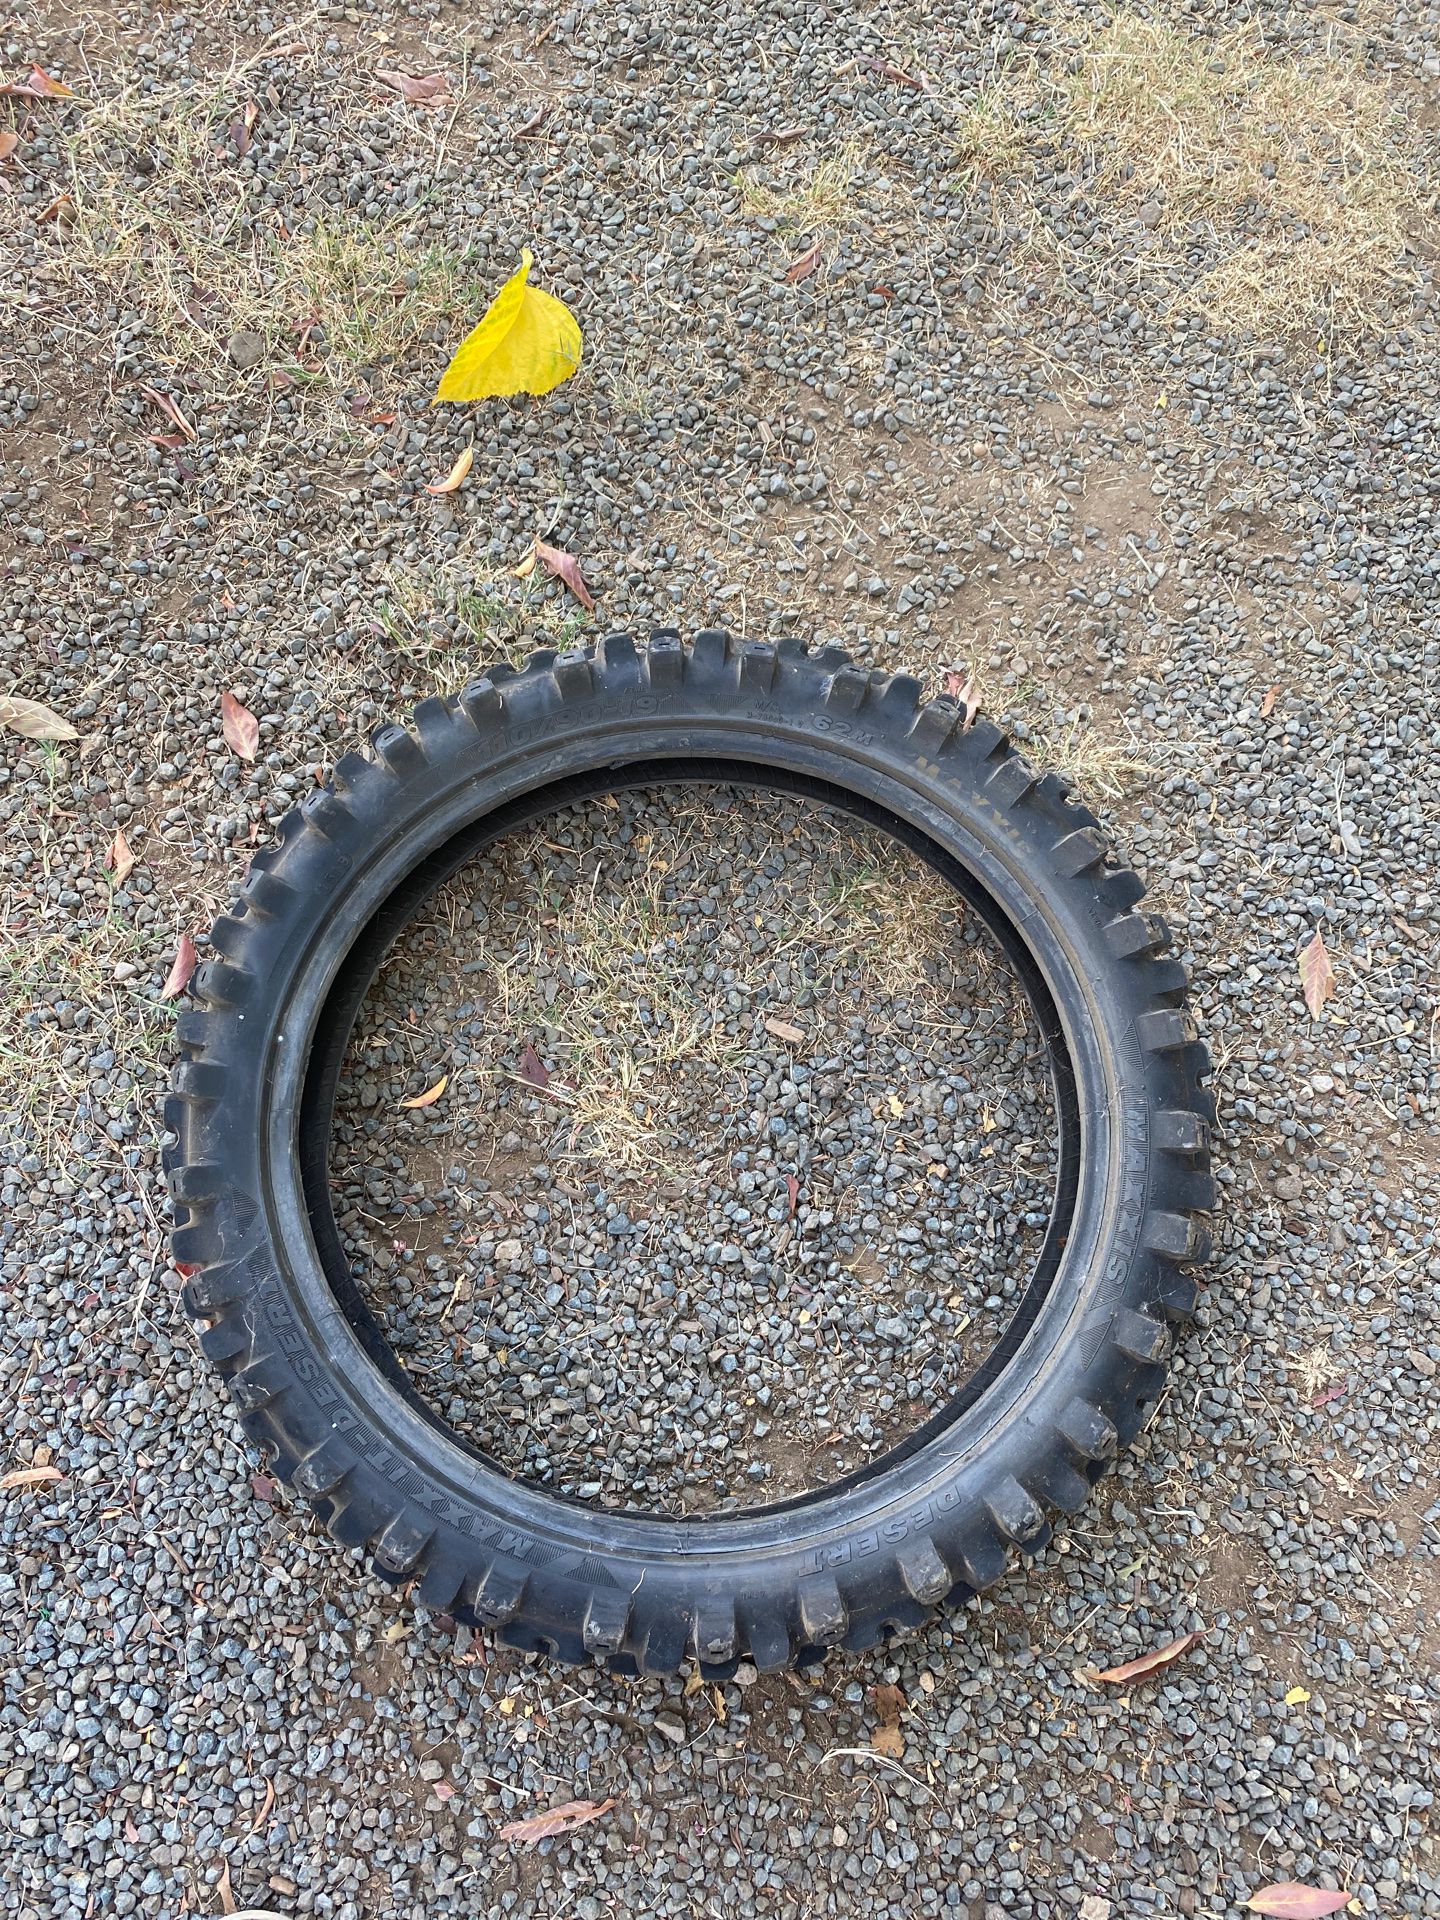 Dirt bike tire